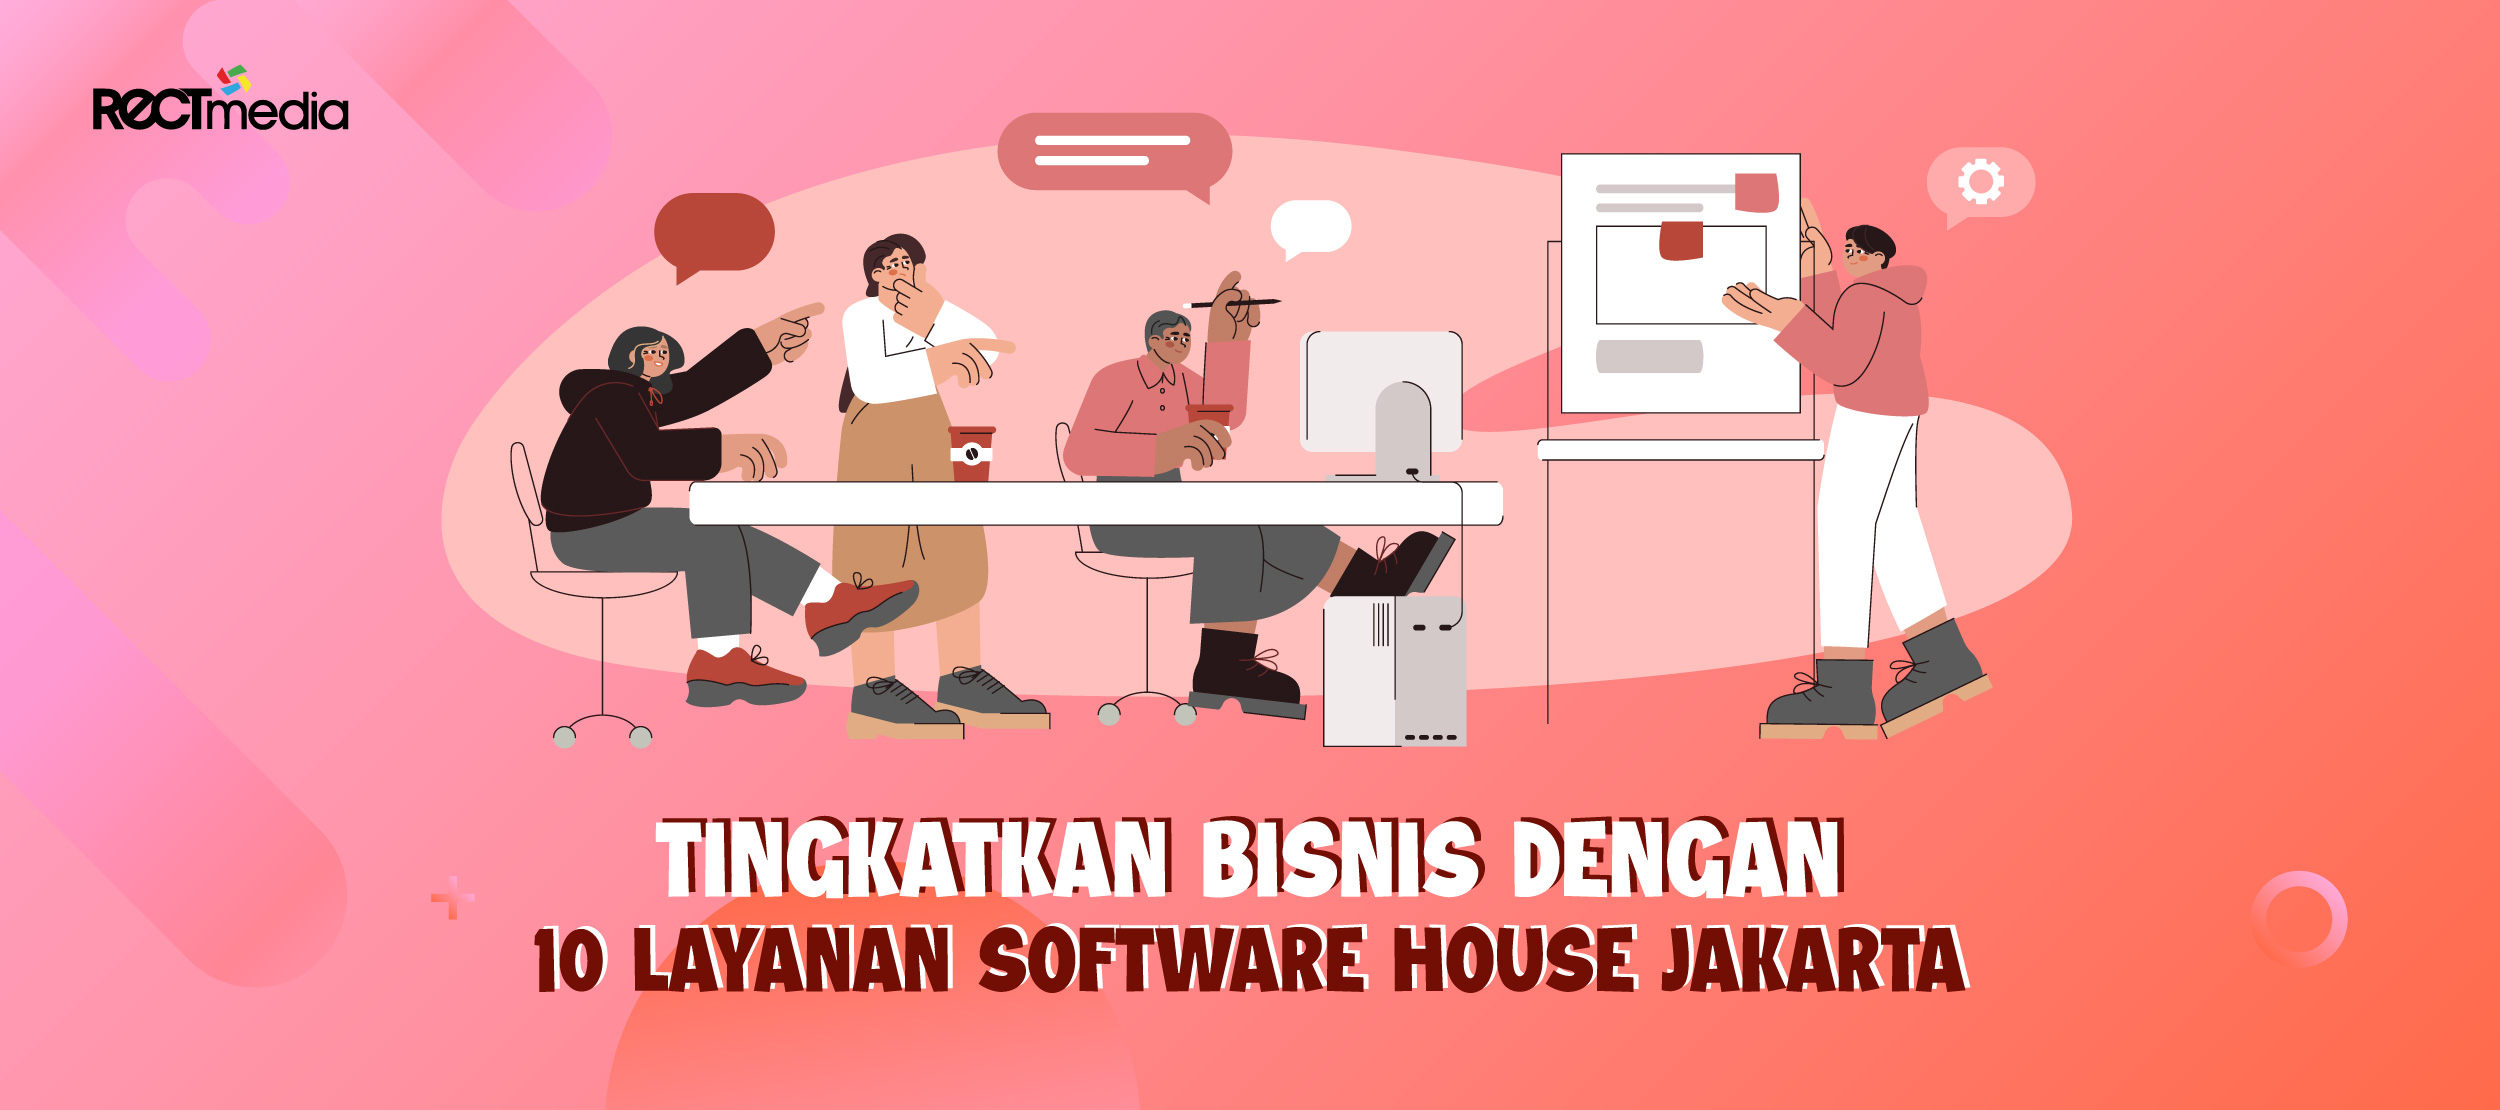 Tingkatkan Bisnis dengan Layanan Software House Jakarta